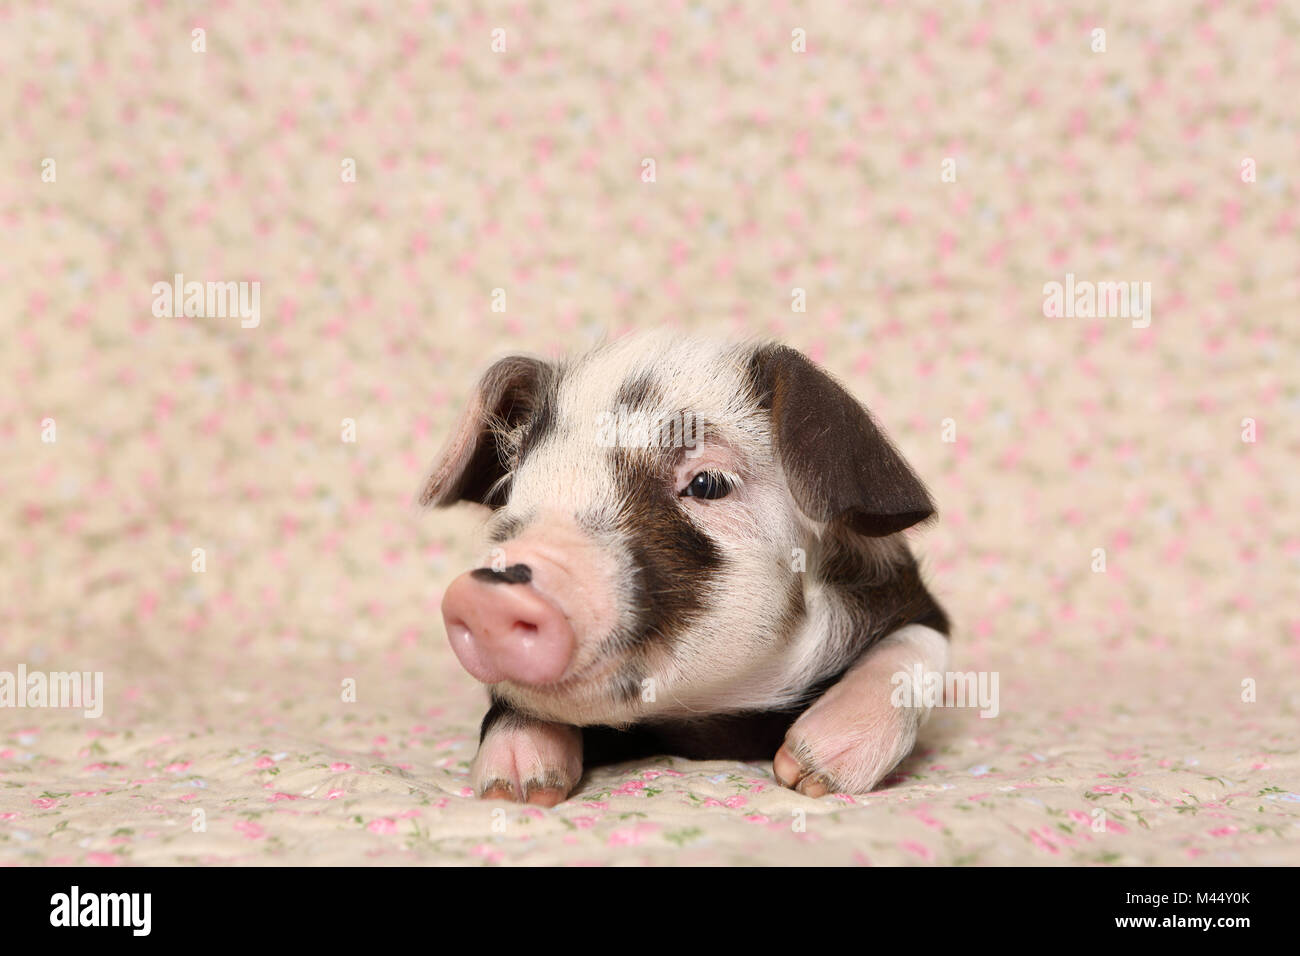 Hausschwein, Turopolje x?. Ferkel (4 Wochen alt) liegen auf einer Decke mit Blumenmuster. Studio Bild. Deutschland Stockfoto